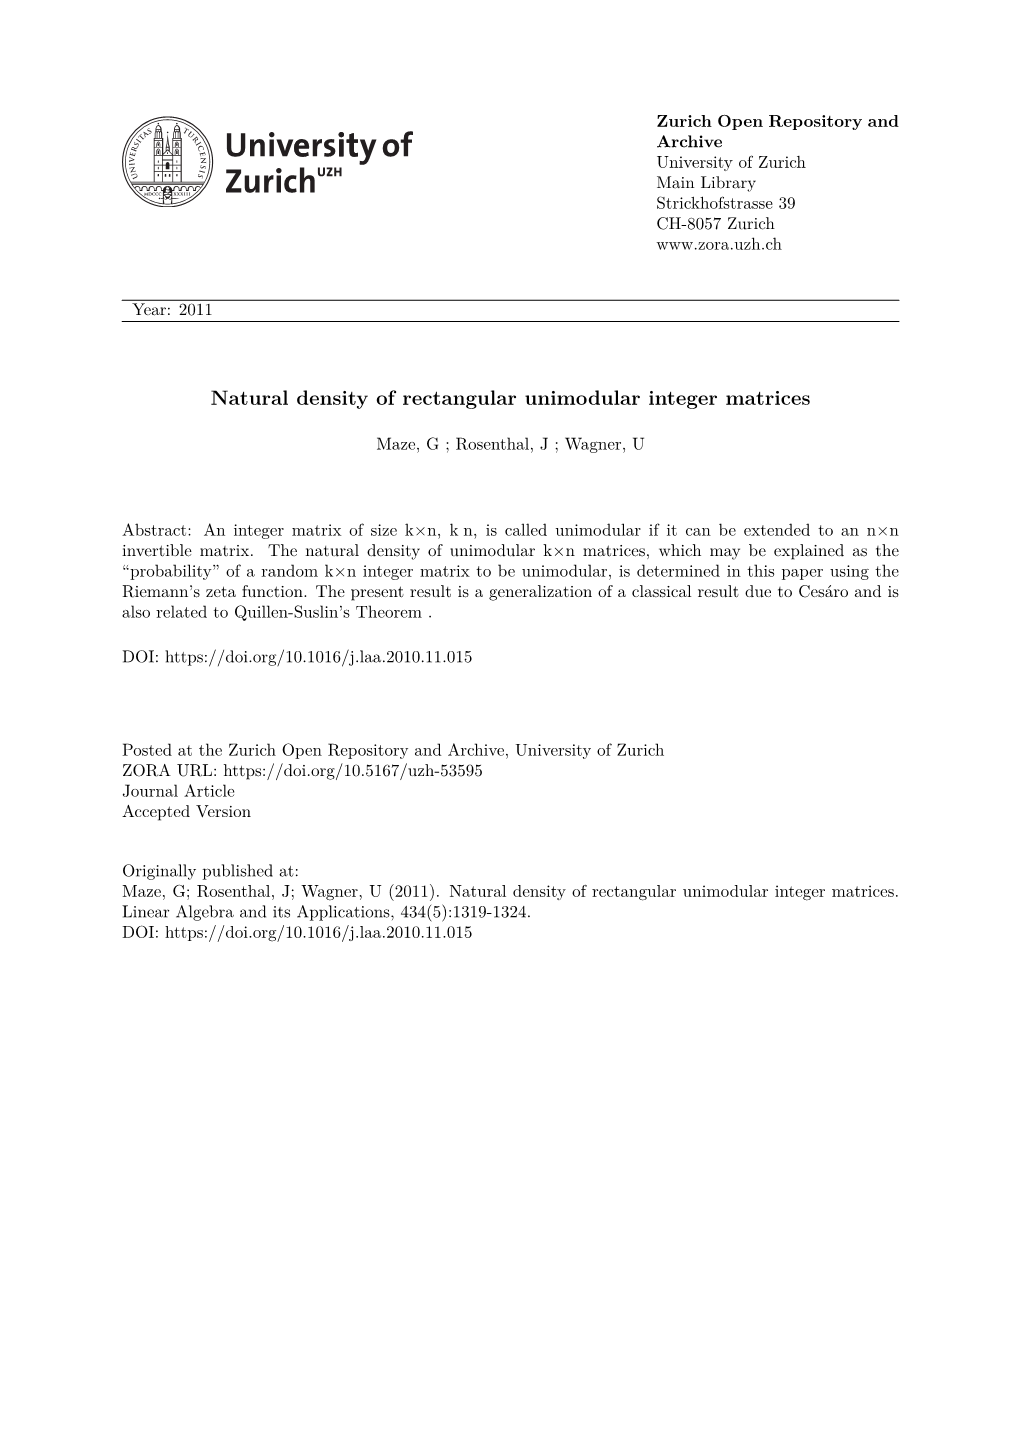 'Natural Density of Rectangular Unimodular Integer Matrices'